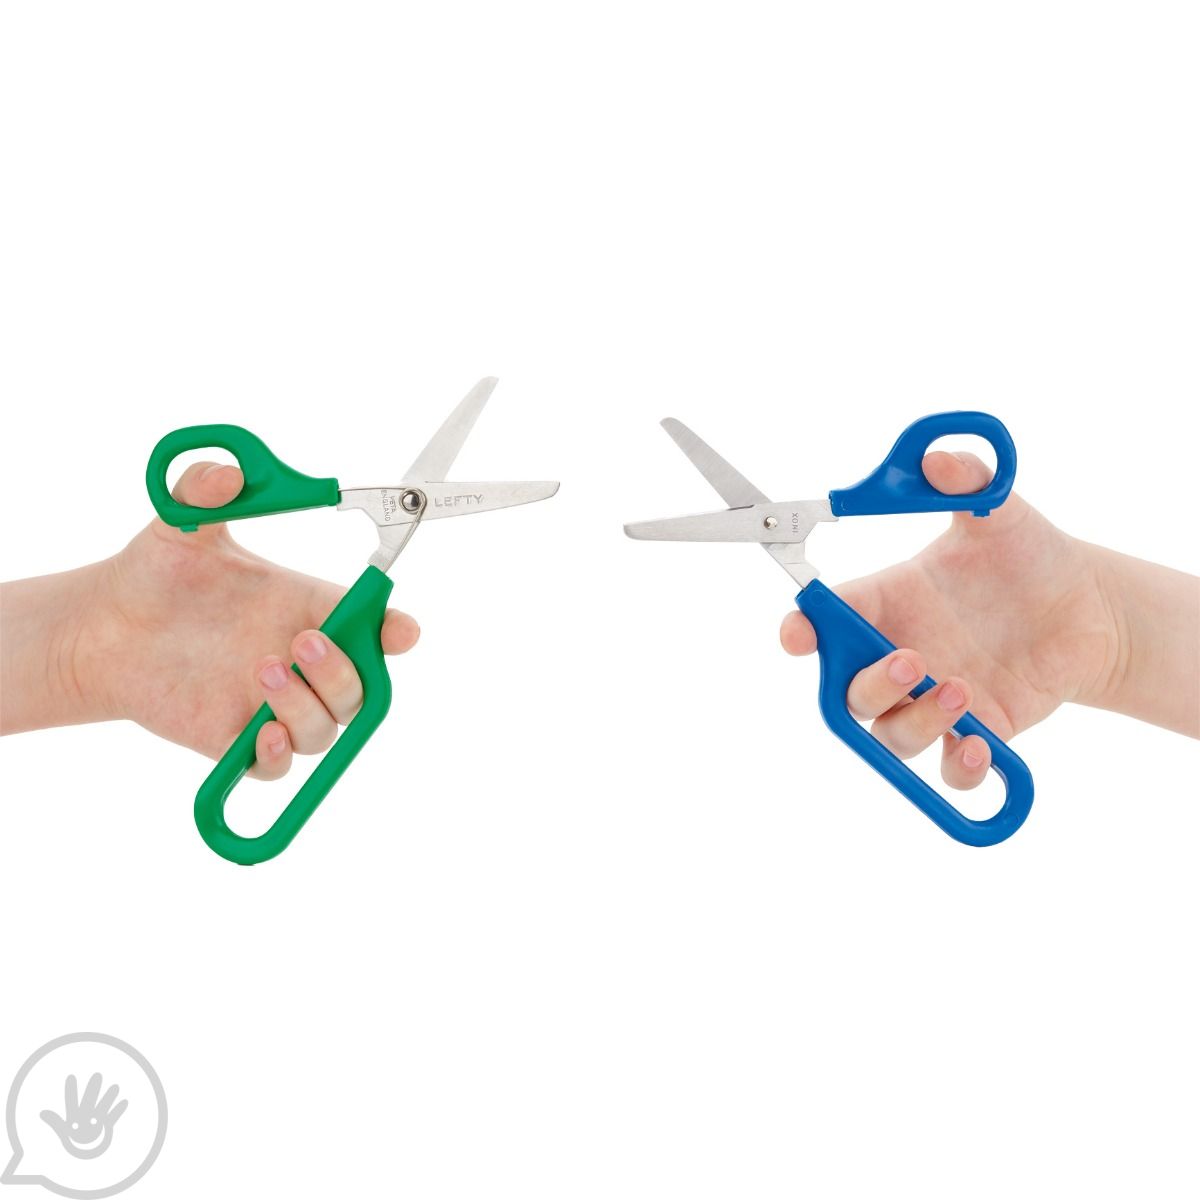 Lefty's Left-Handed Kid Scissors